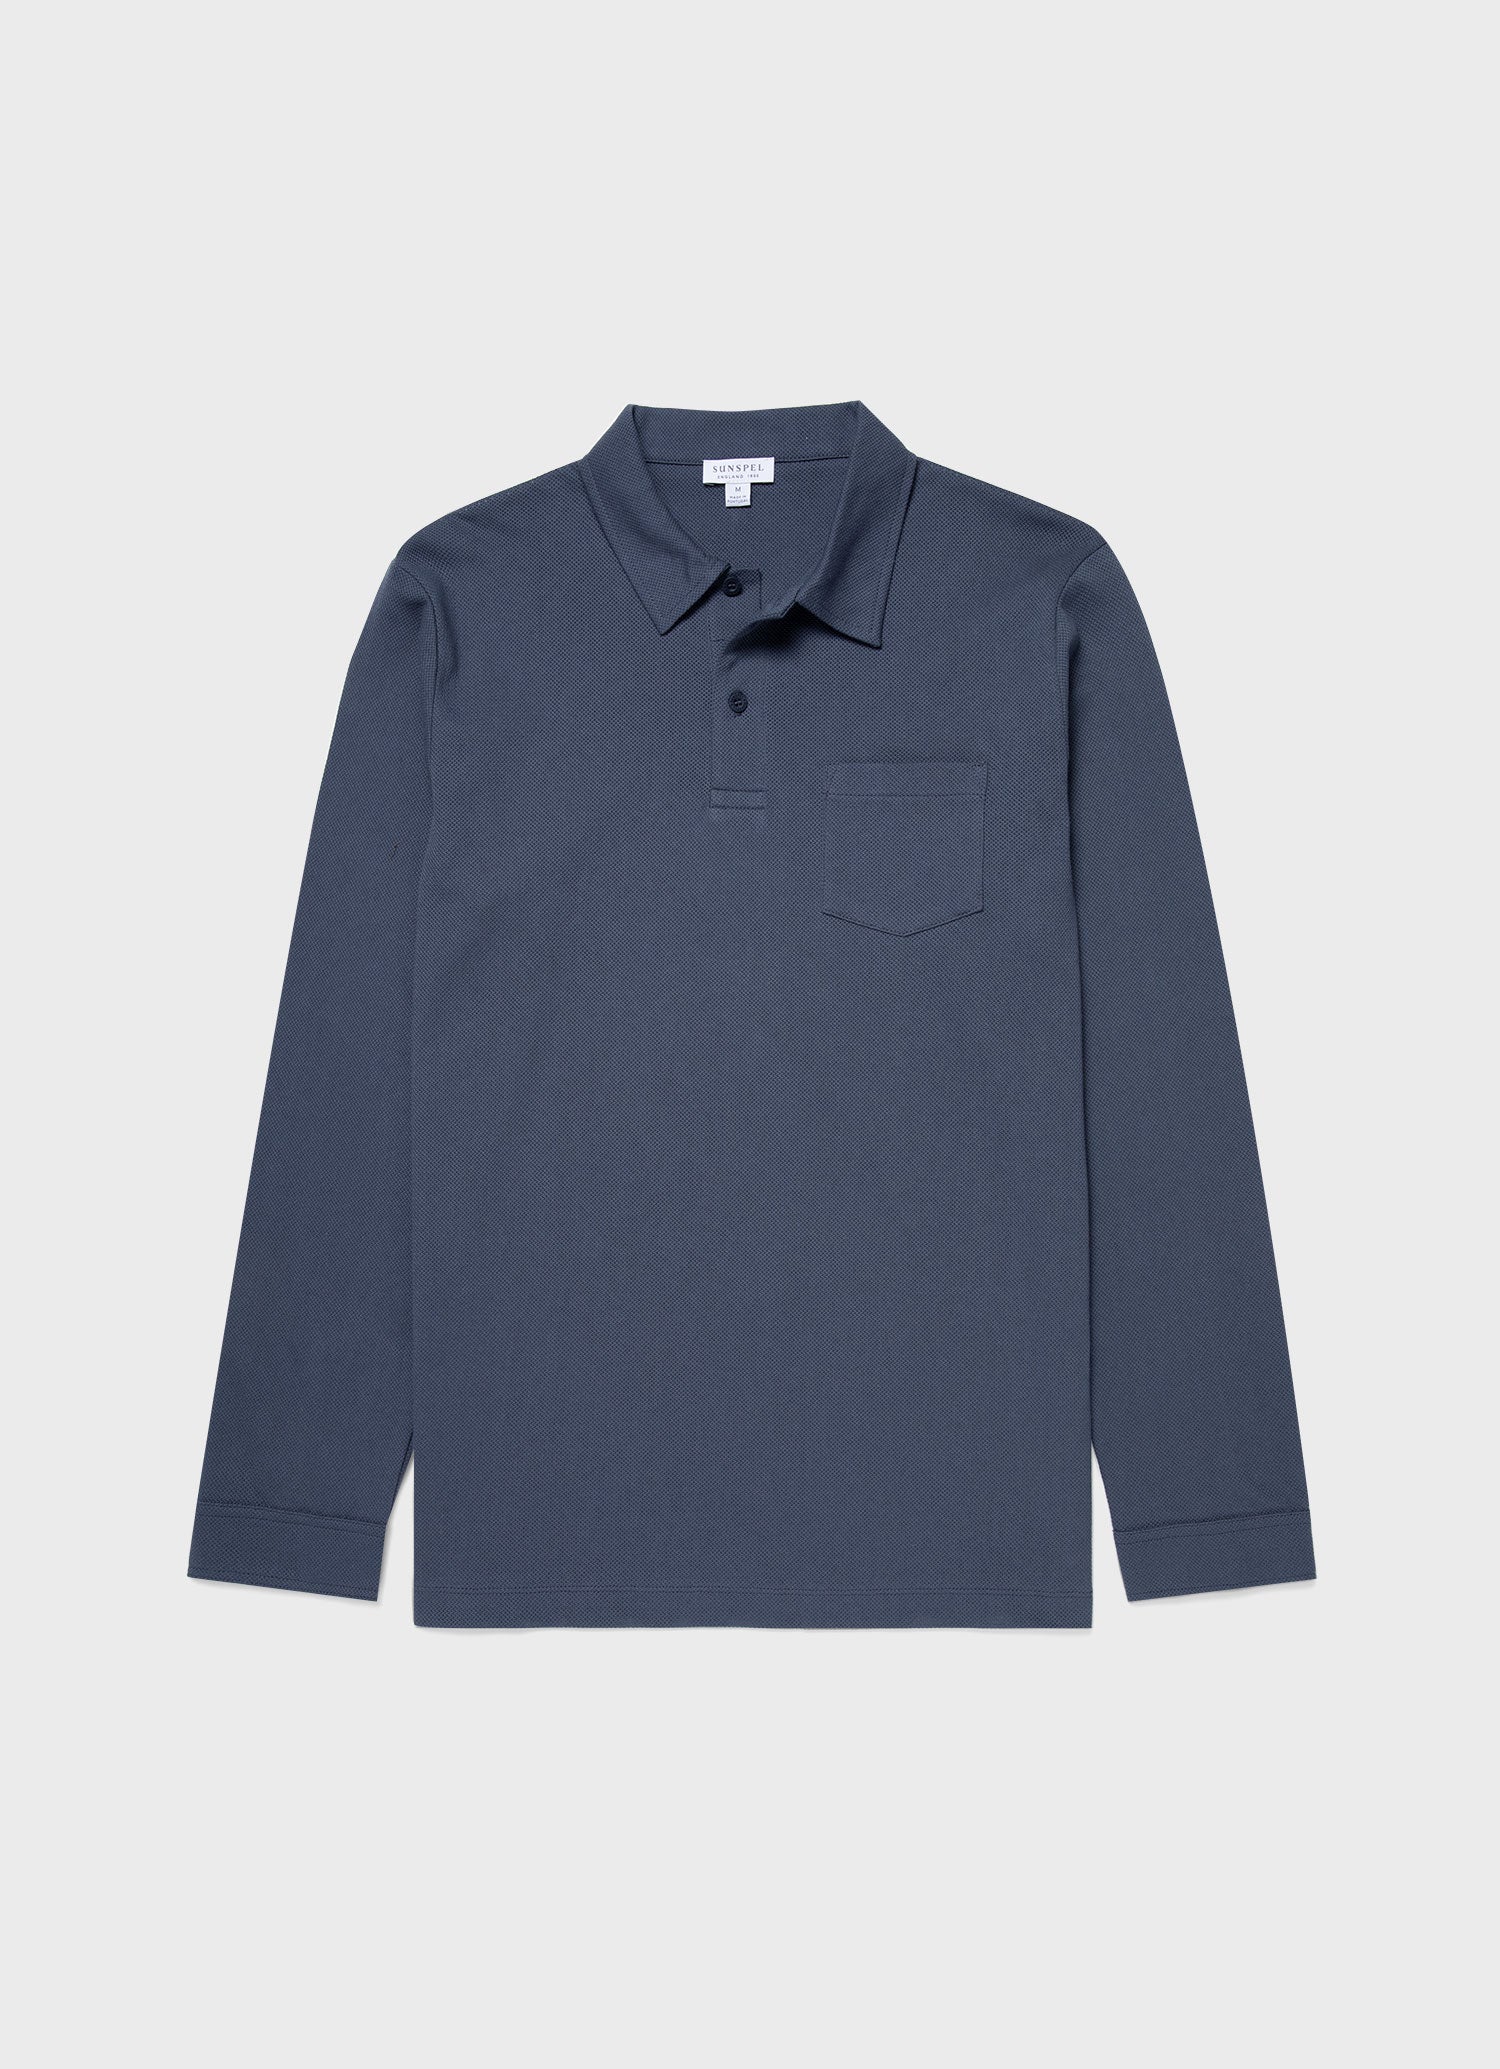 Men's Long Sleeve Riviera Polo Shirt in Slate Blue | Sunspel